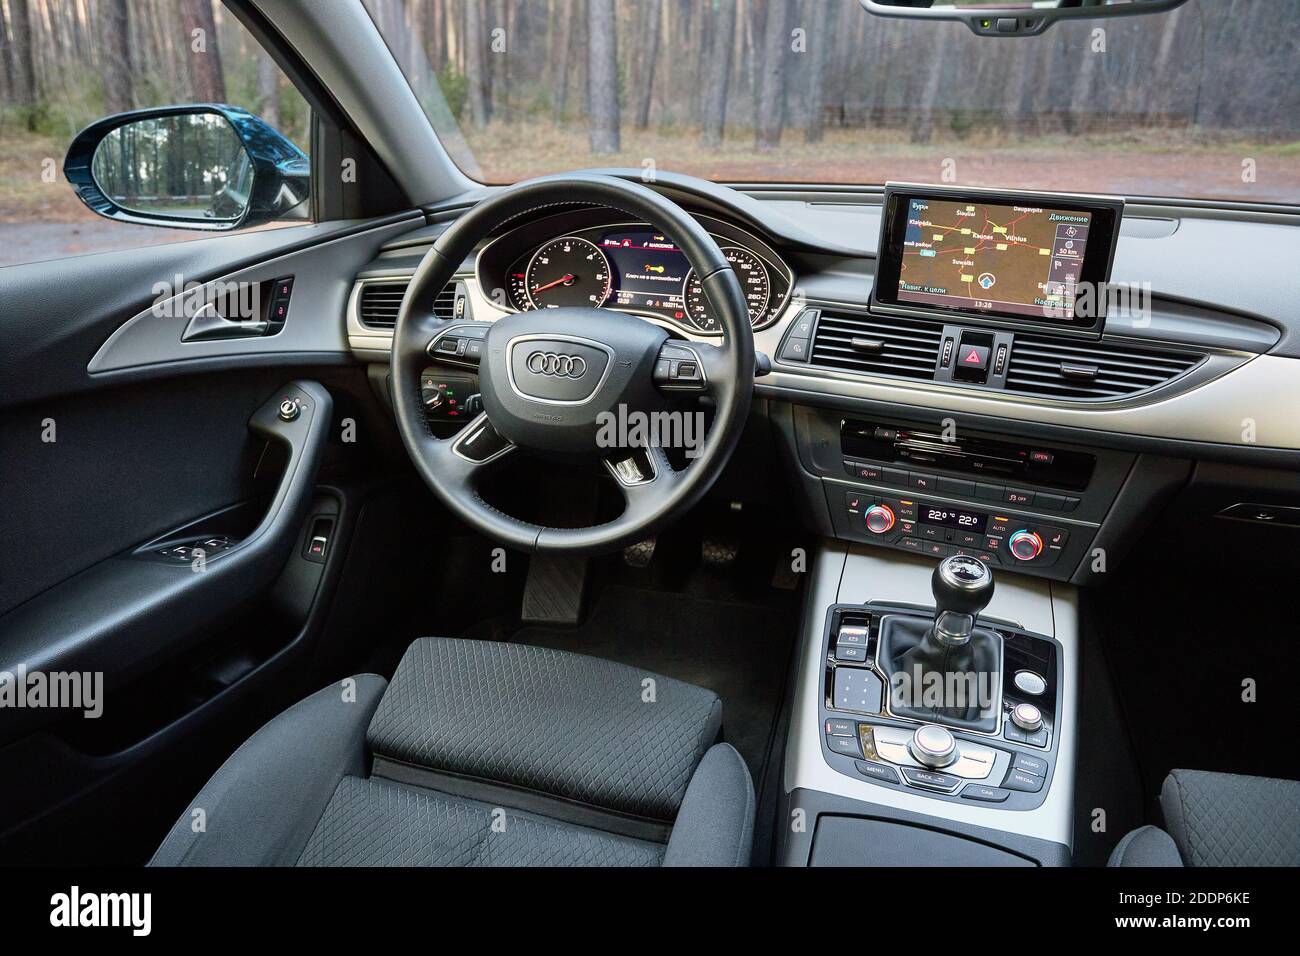 GRODNO, BÉLARUS - DÉCEMBRE 2019 : intérieur de l'Audi A6 4G C7 dans des tons sombres avec affichage avec carte de navigation GPS, panneaux de commande de climatisation du système multimédia Banque D'Images